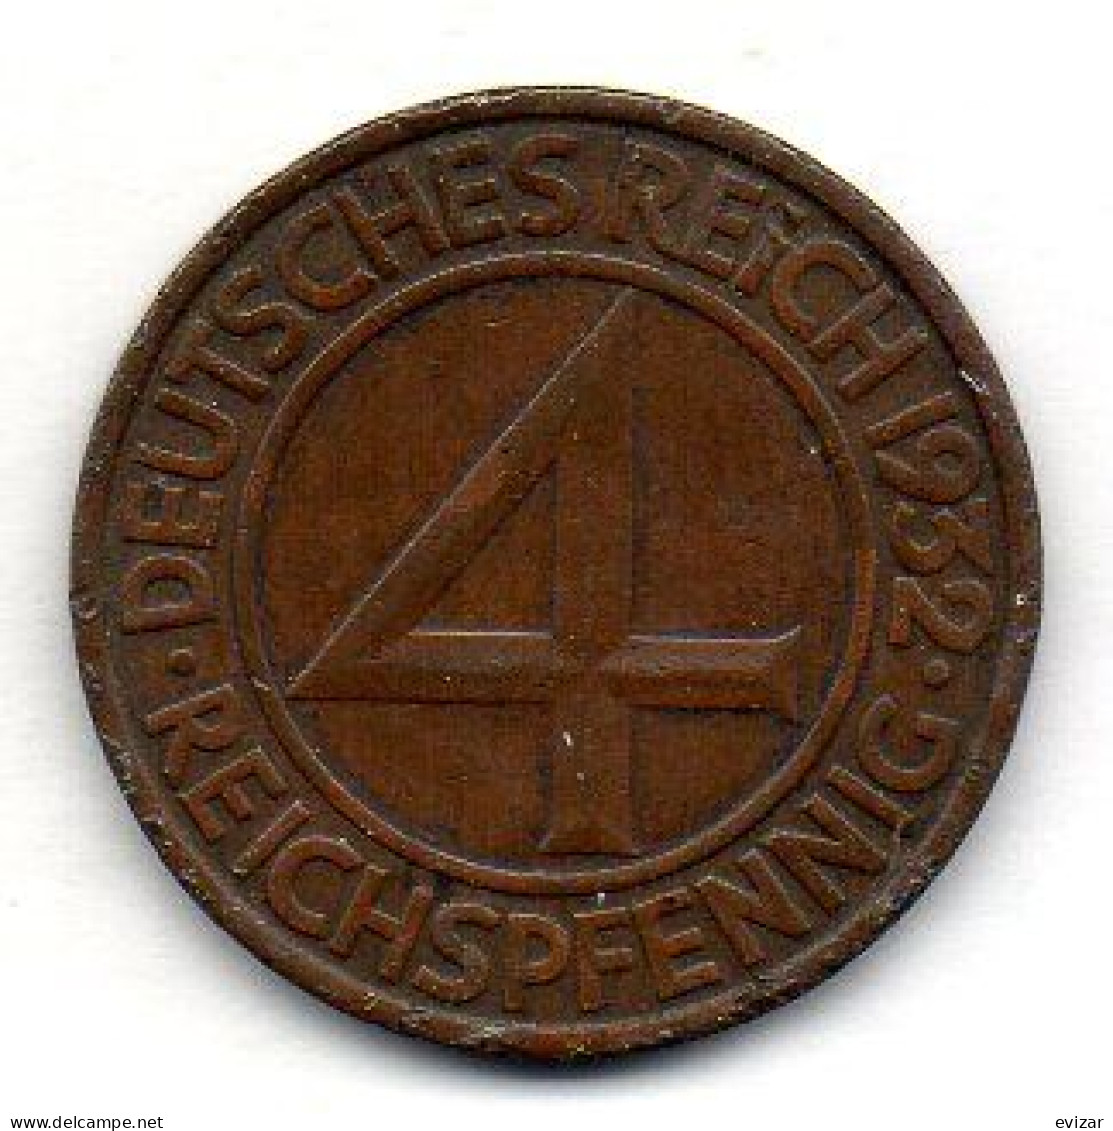 GERMANY - WEIMAR REPUBLIC, 4 Reichs Pfennig, Bronze, Year 1932-J, KM # 75 - 4 Reichspfennig